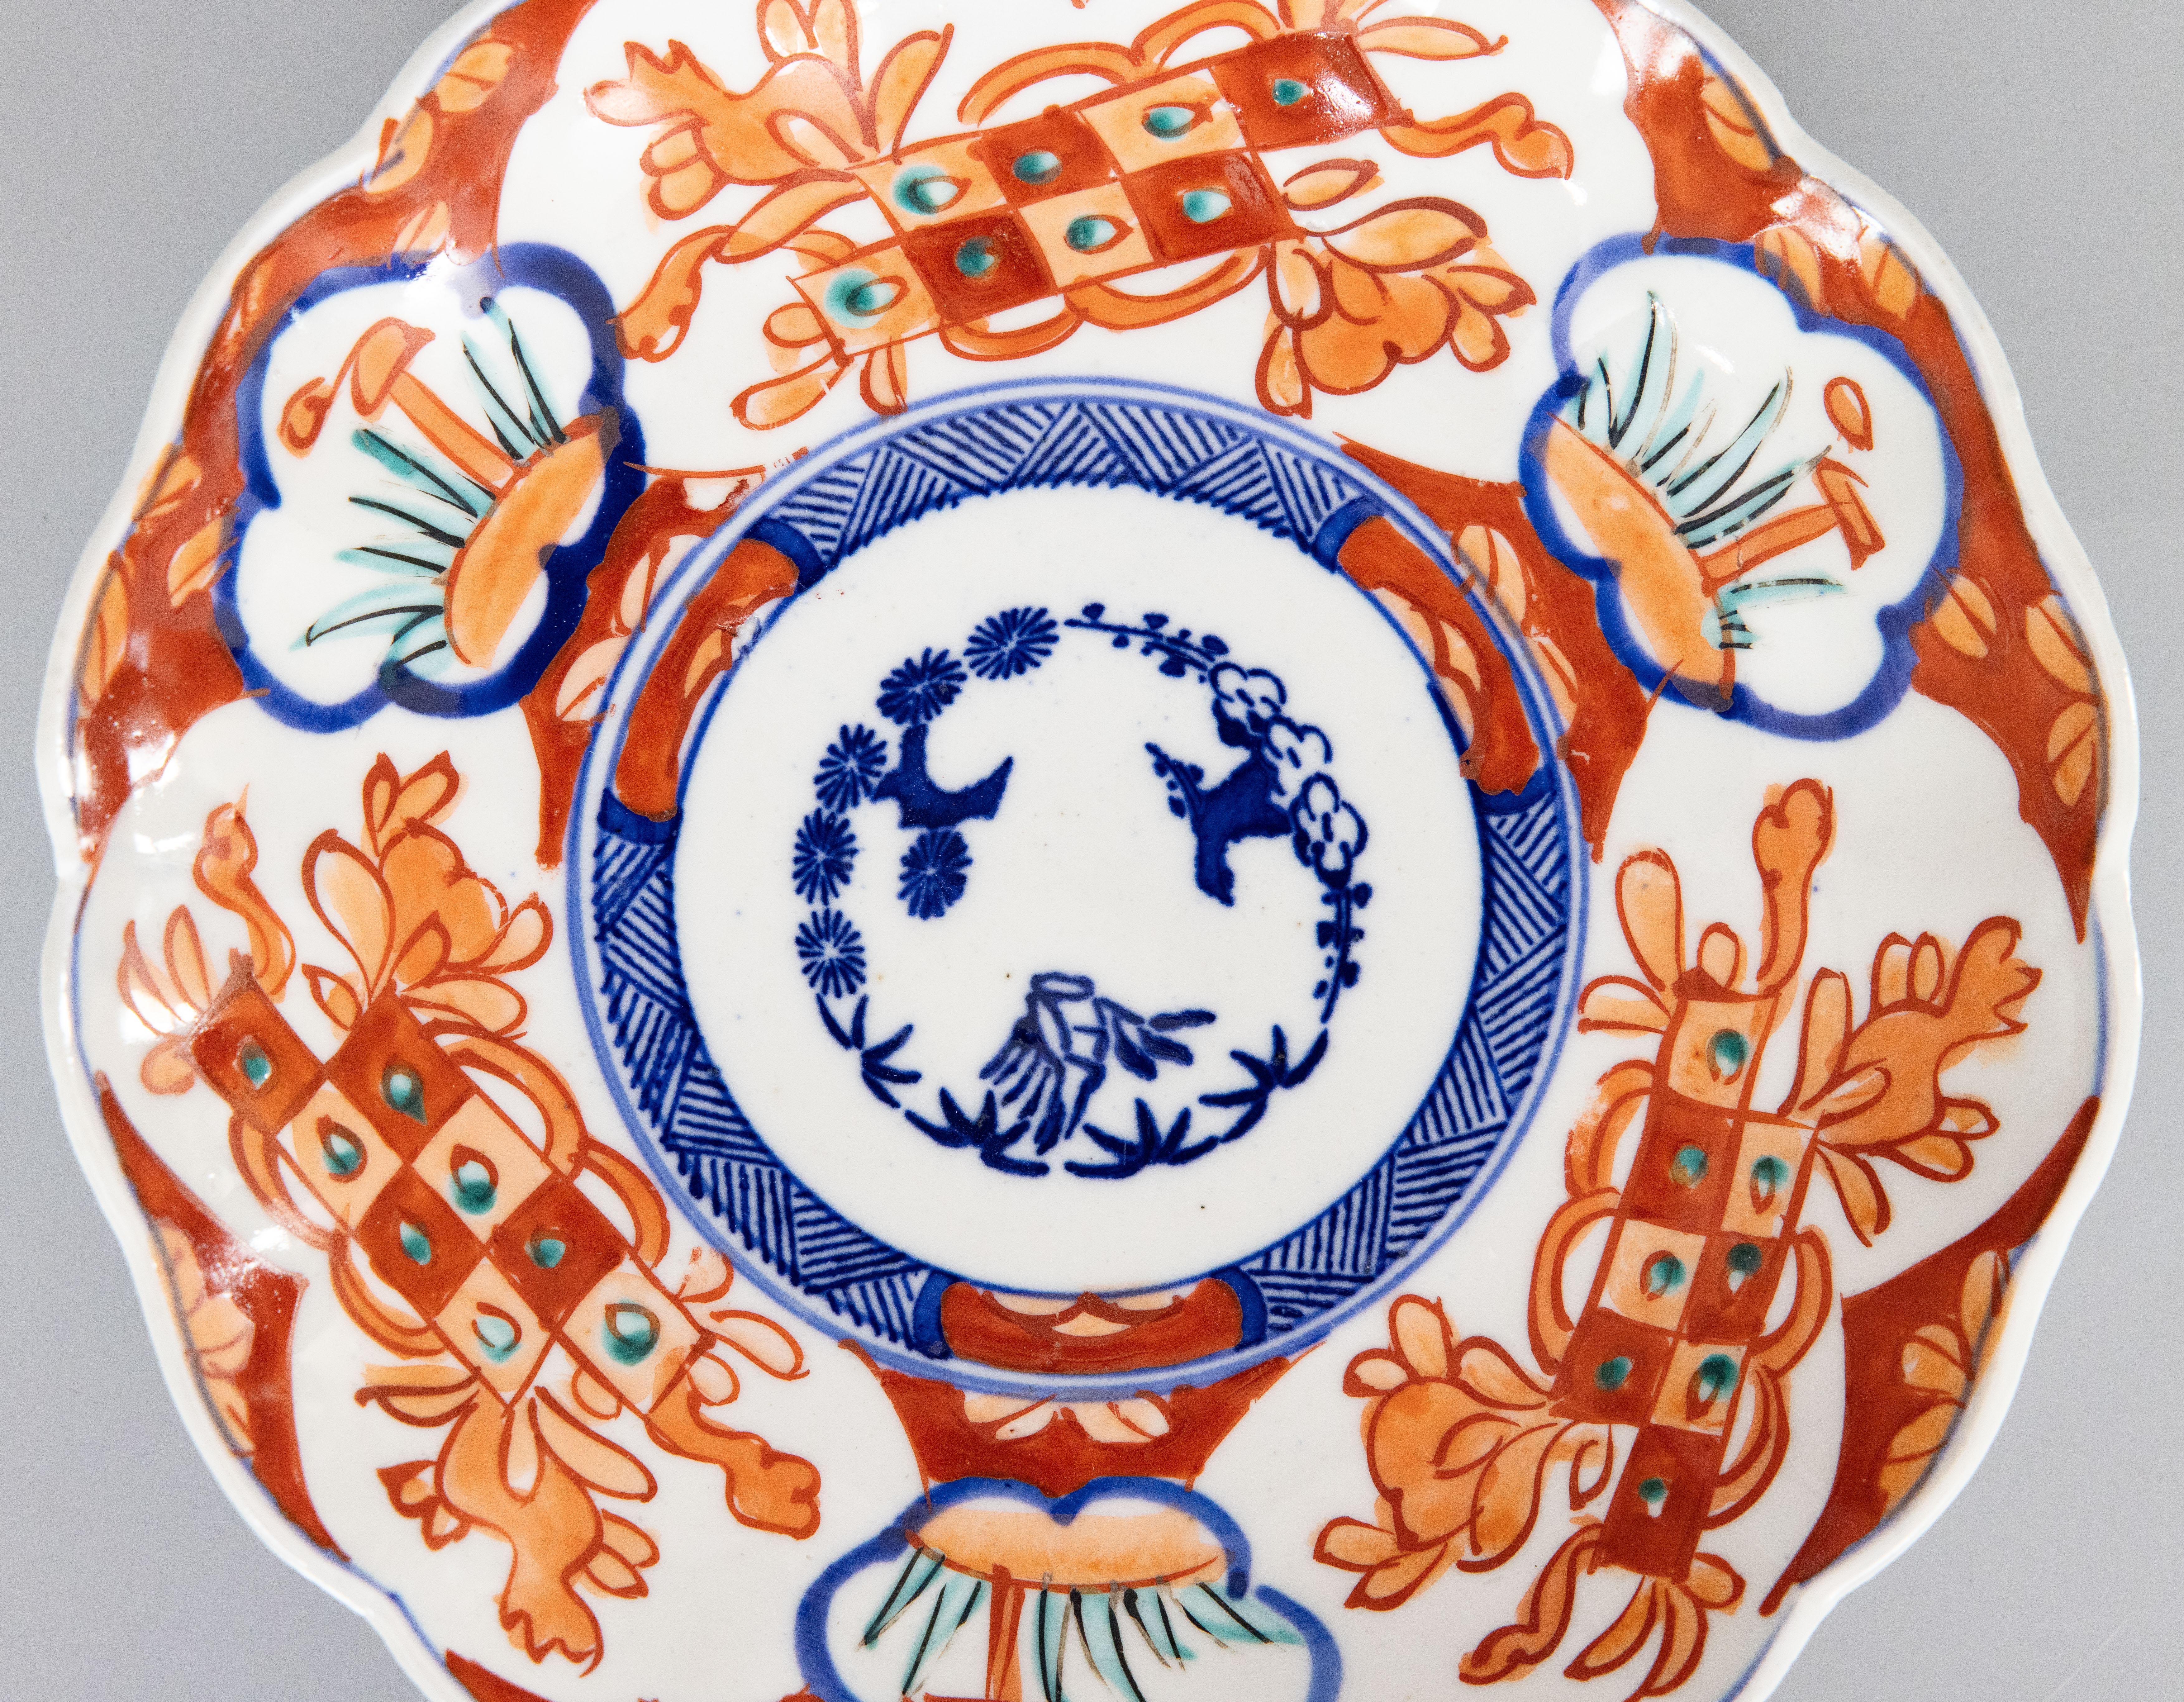 Merveilleuse assiette Imari antique du 19e siècle à bord festonné. Des oranges, des bleus et des verts éclatants sont à l'honneur.